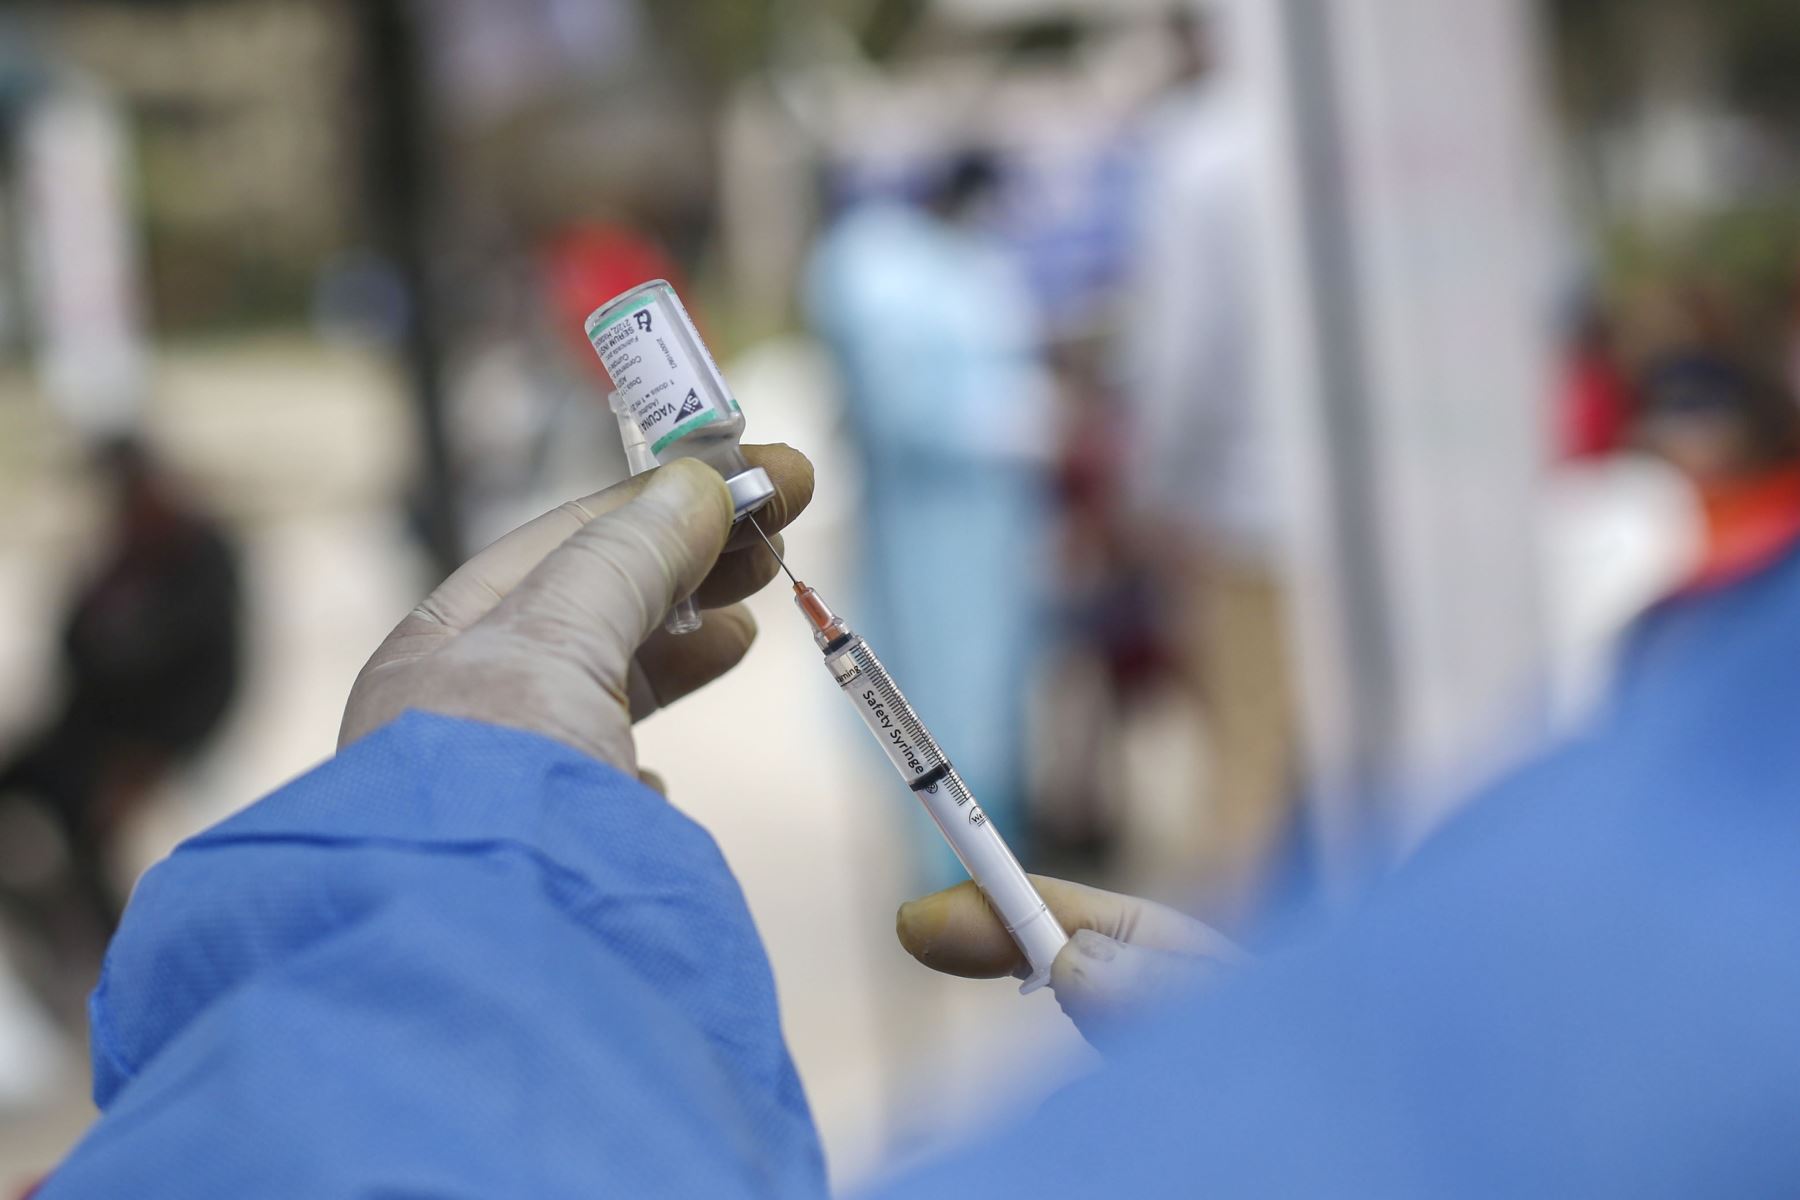 El Ministerio de Salud continua con la campaña de vacunación contra el covid-19 y la influenza en diversos puntos de Lima y Callao. En la imagen, campaña de vacunación  en el Parque Mariategui de Los Olivos.
Foto: ANDINA/Carla Patiño Ramírez